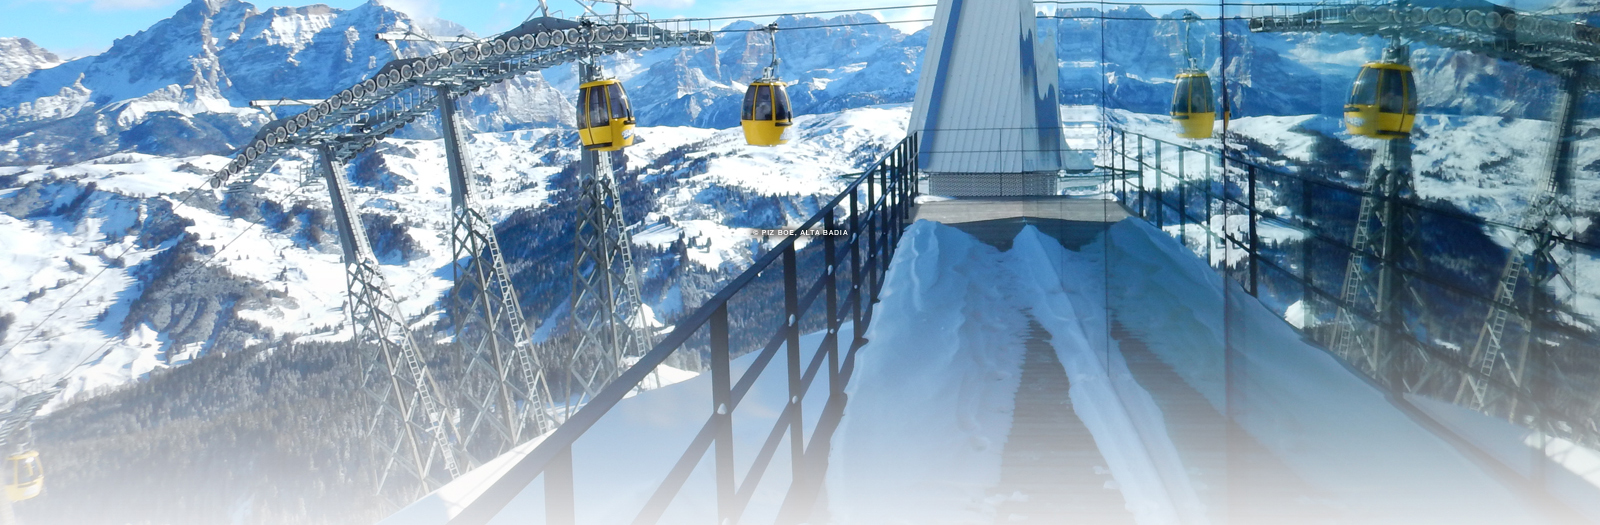 Ski and snowboard vacations at Alta Badia